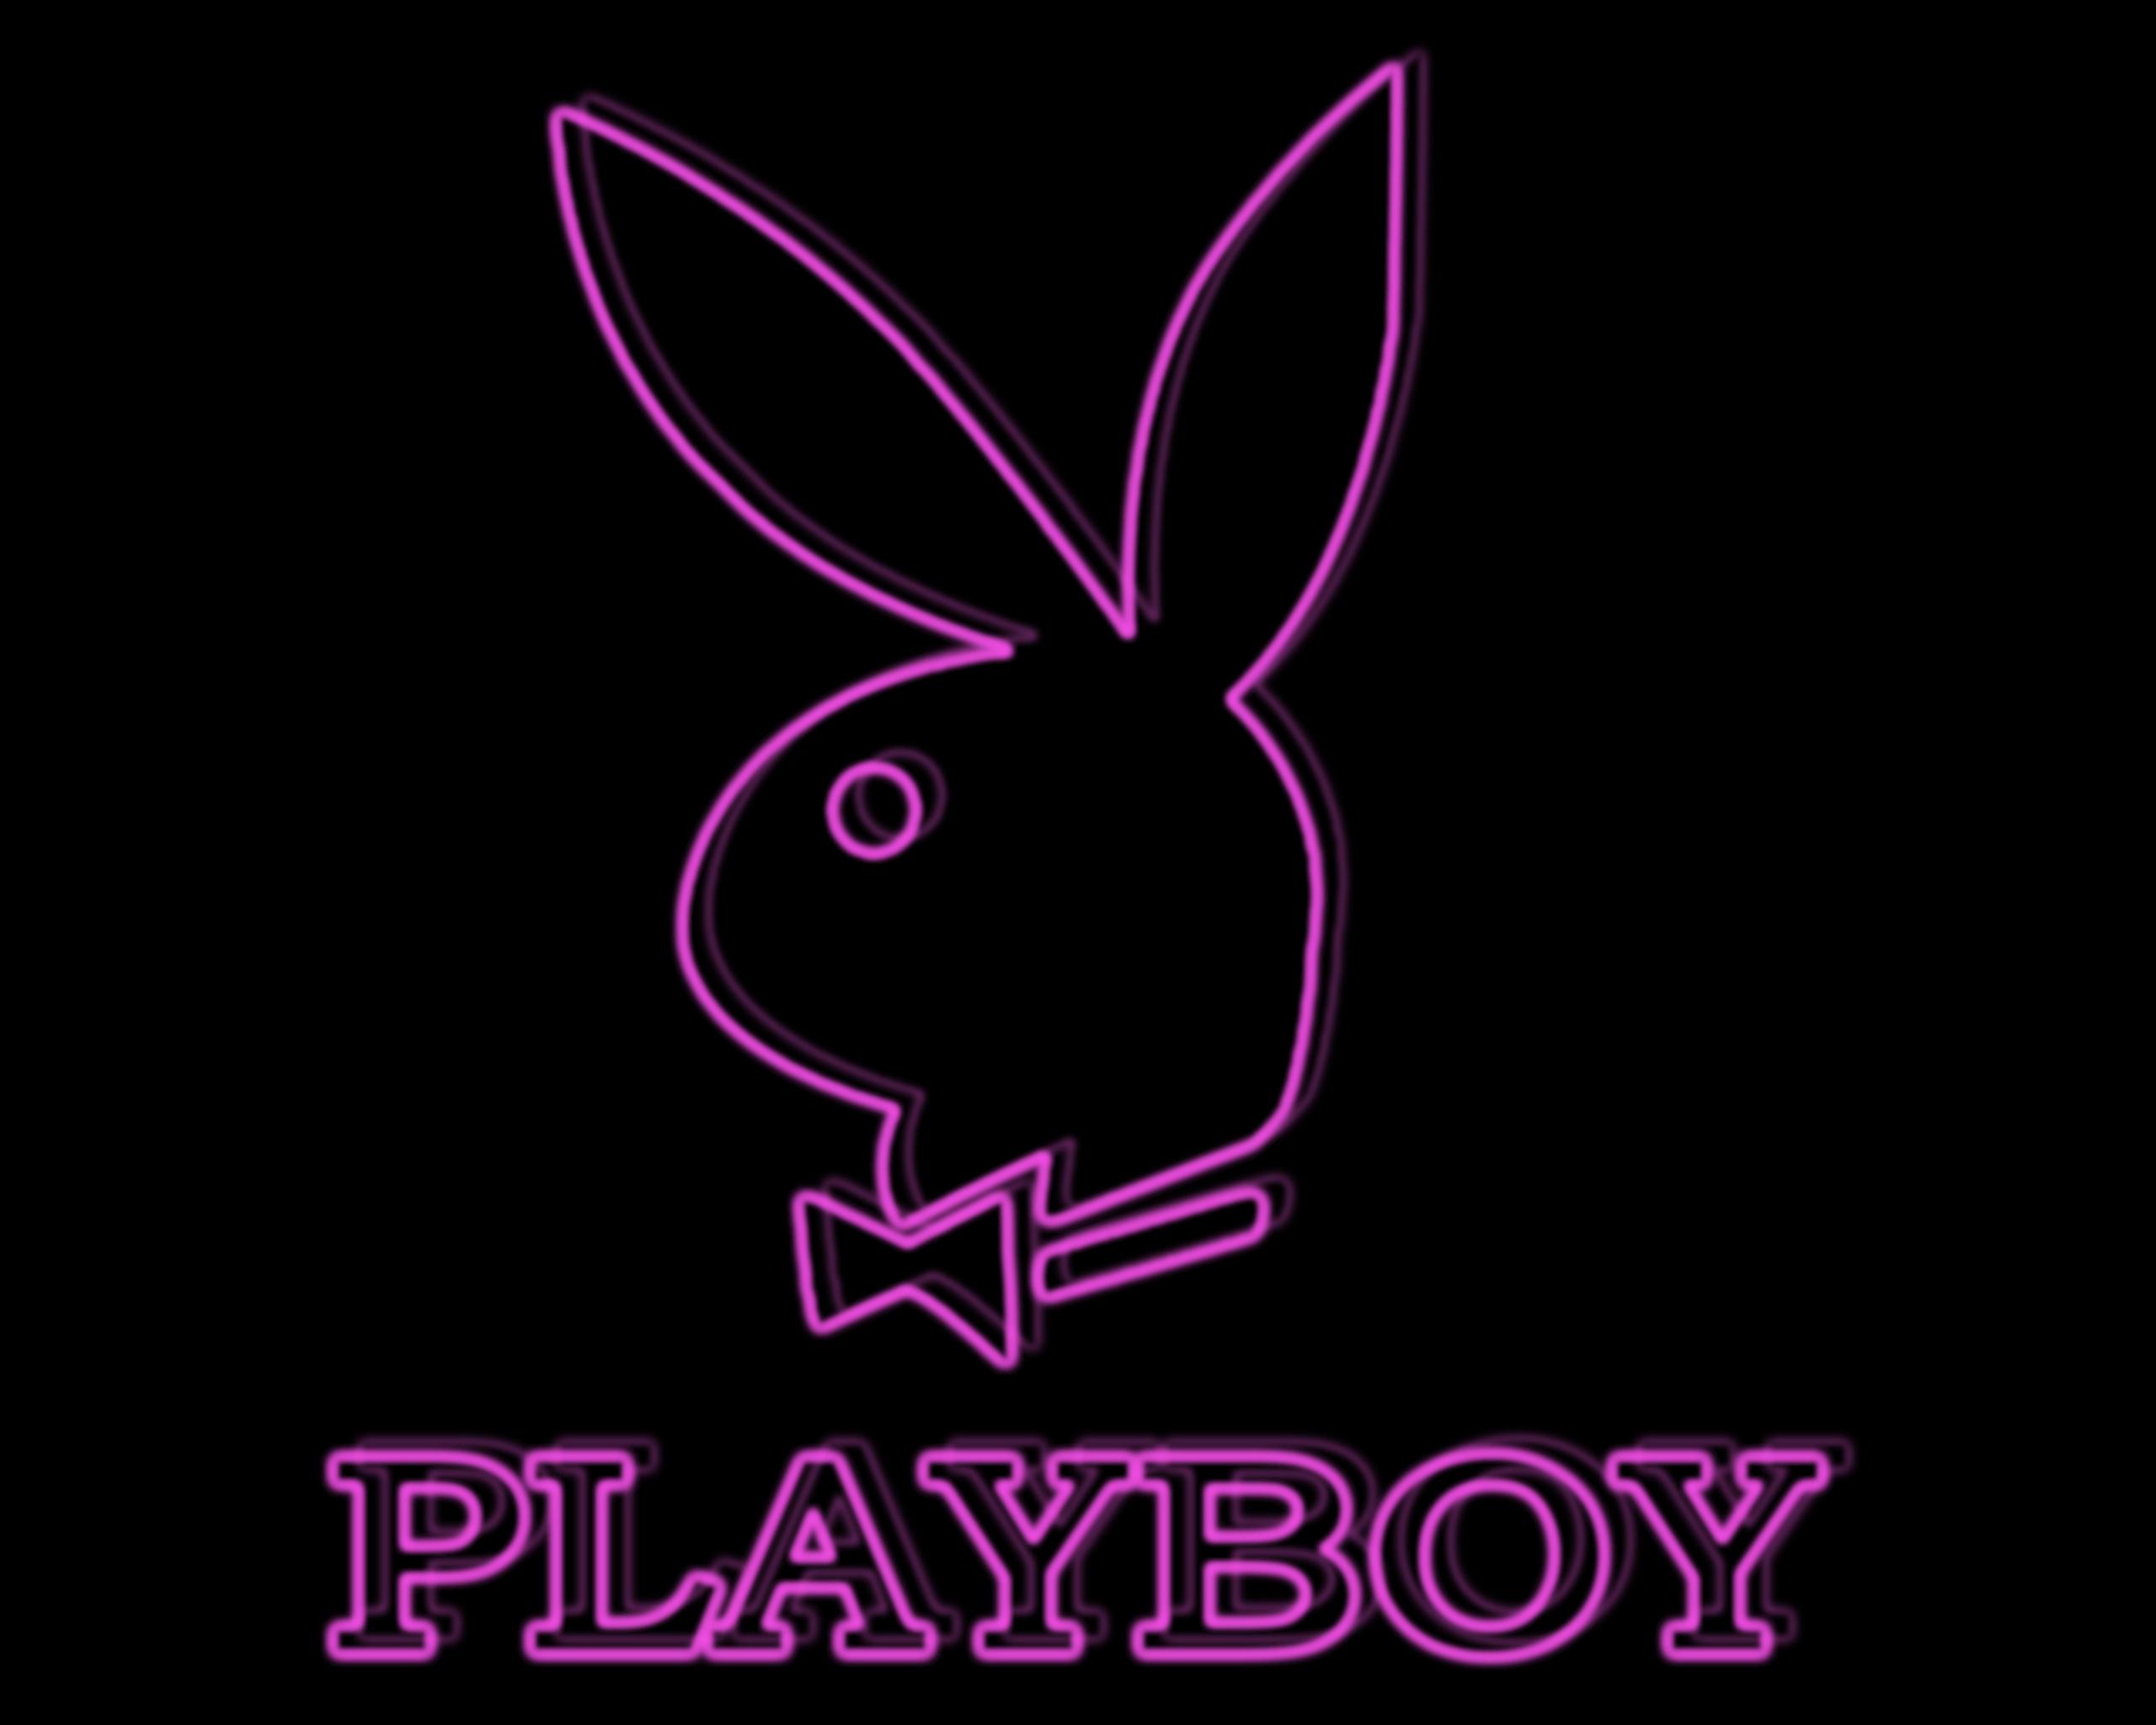 Playboy プレイボーイ Playboy プレイボーイ 壁紙 ファンポップ